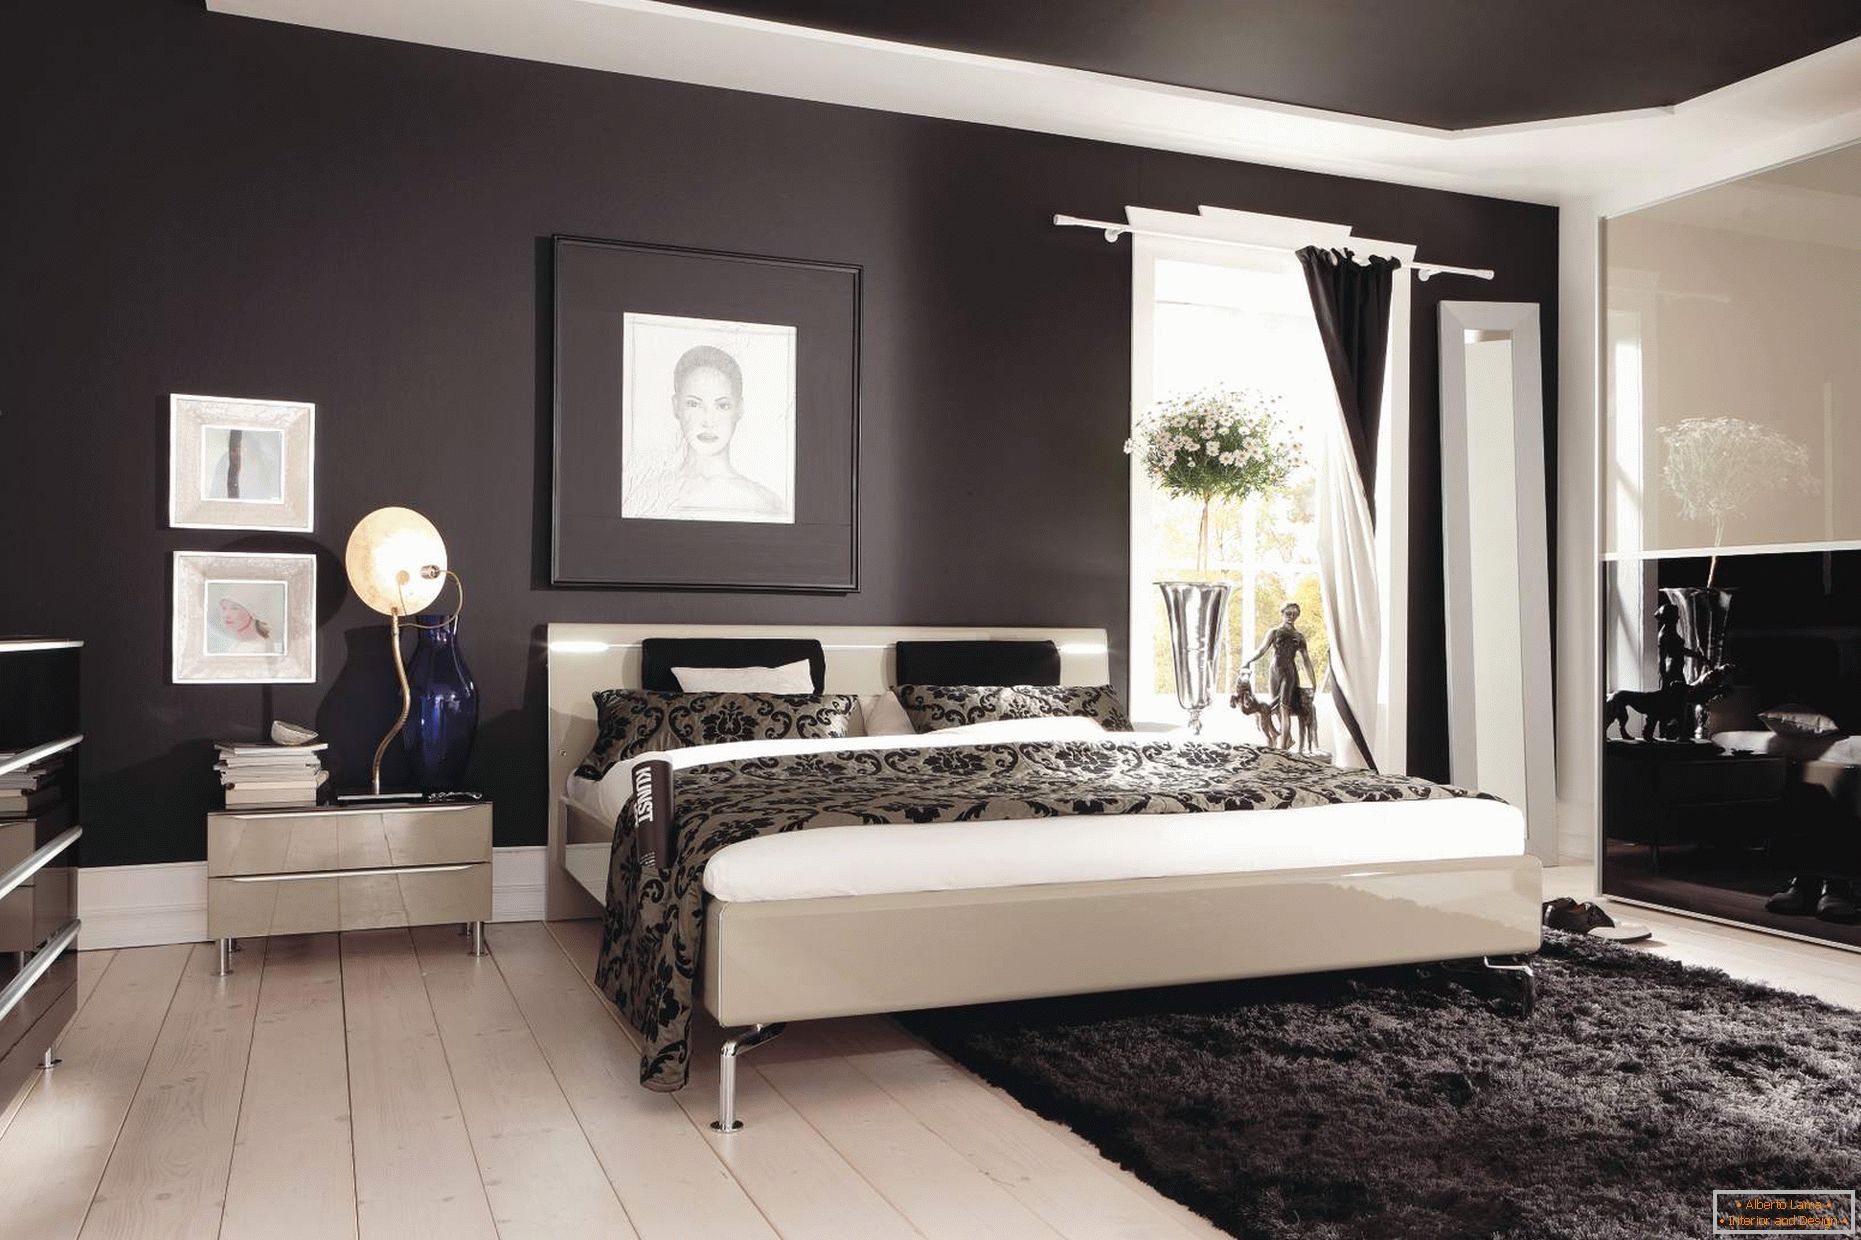 Tavan negru și pereți în dormitor